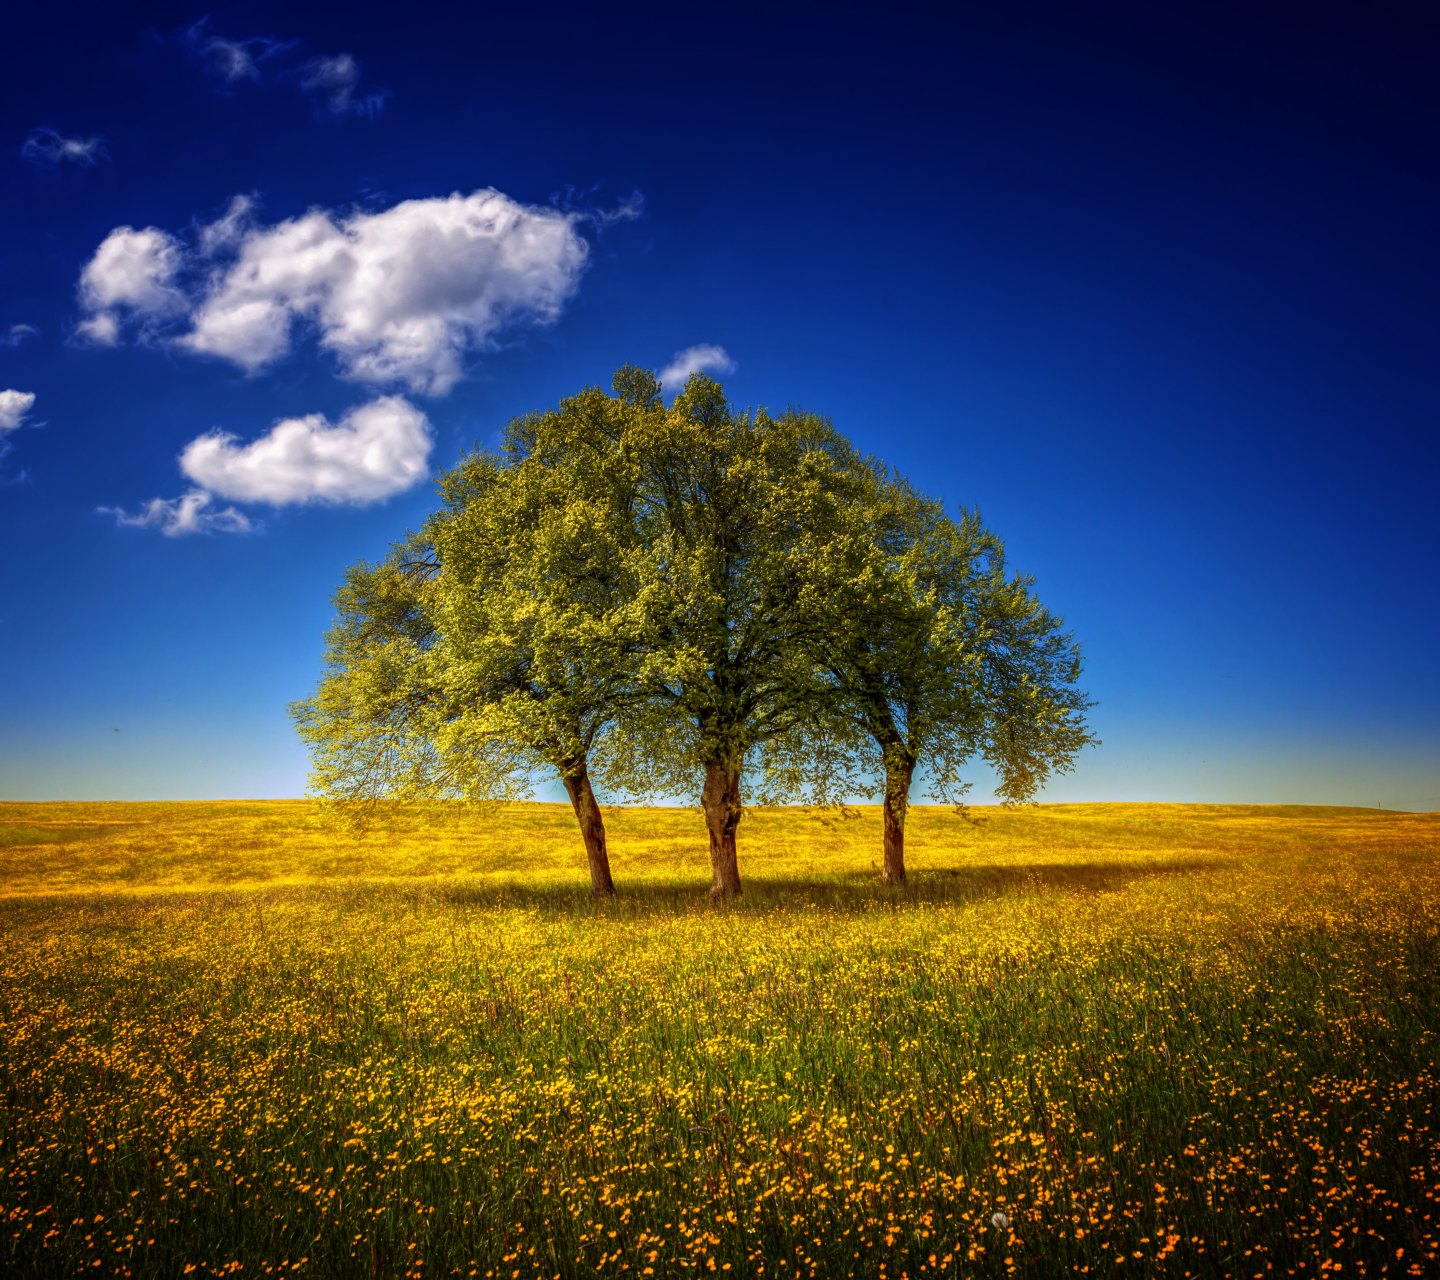 Скачать обои бесплатно Деревья, Небо, Облака, Дерево, Весна, Облако, Земля/природа картинка на рабочий стол ПК